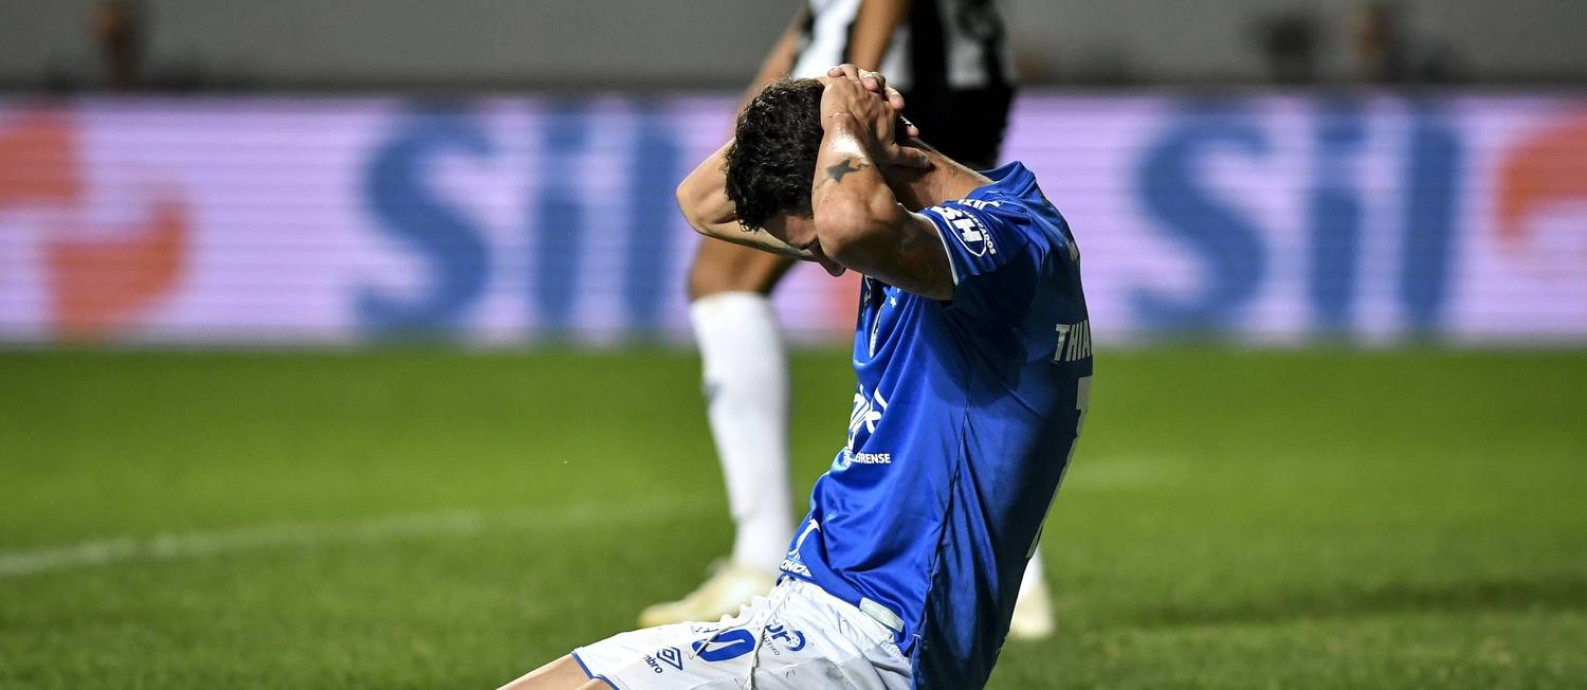 O desespero de Thiago Neves na derrota do Cruzeiro para o Atlético-MG Foto: Agência i7 / Joo Guilherme /Agengia i7